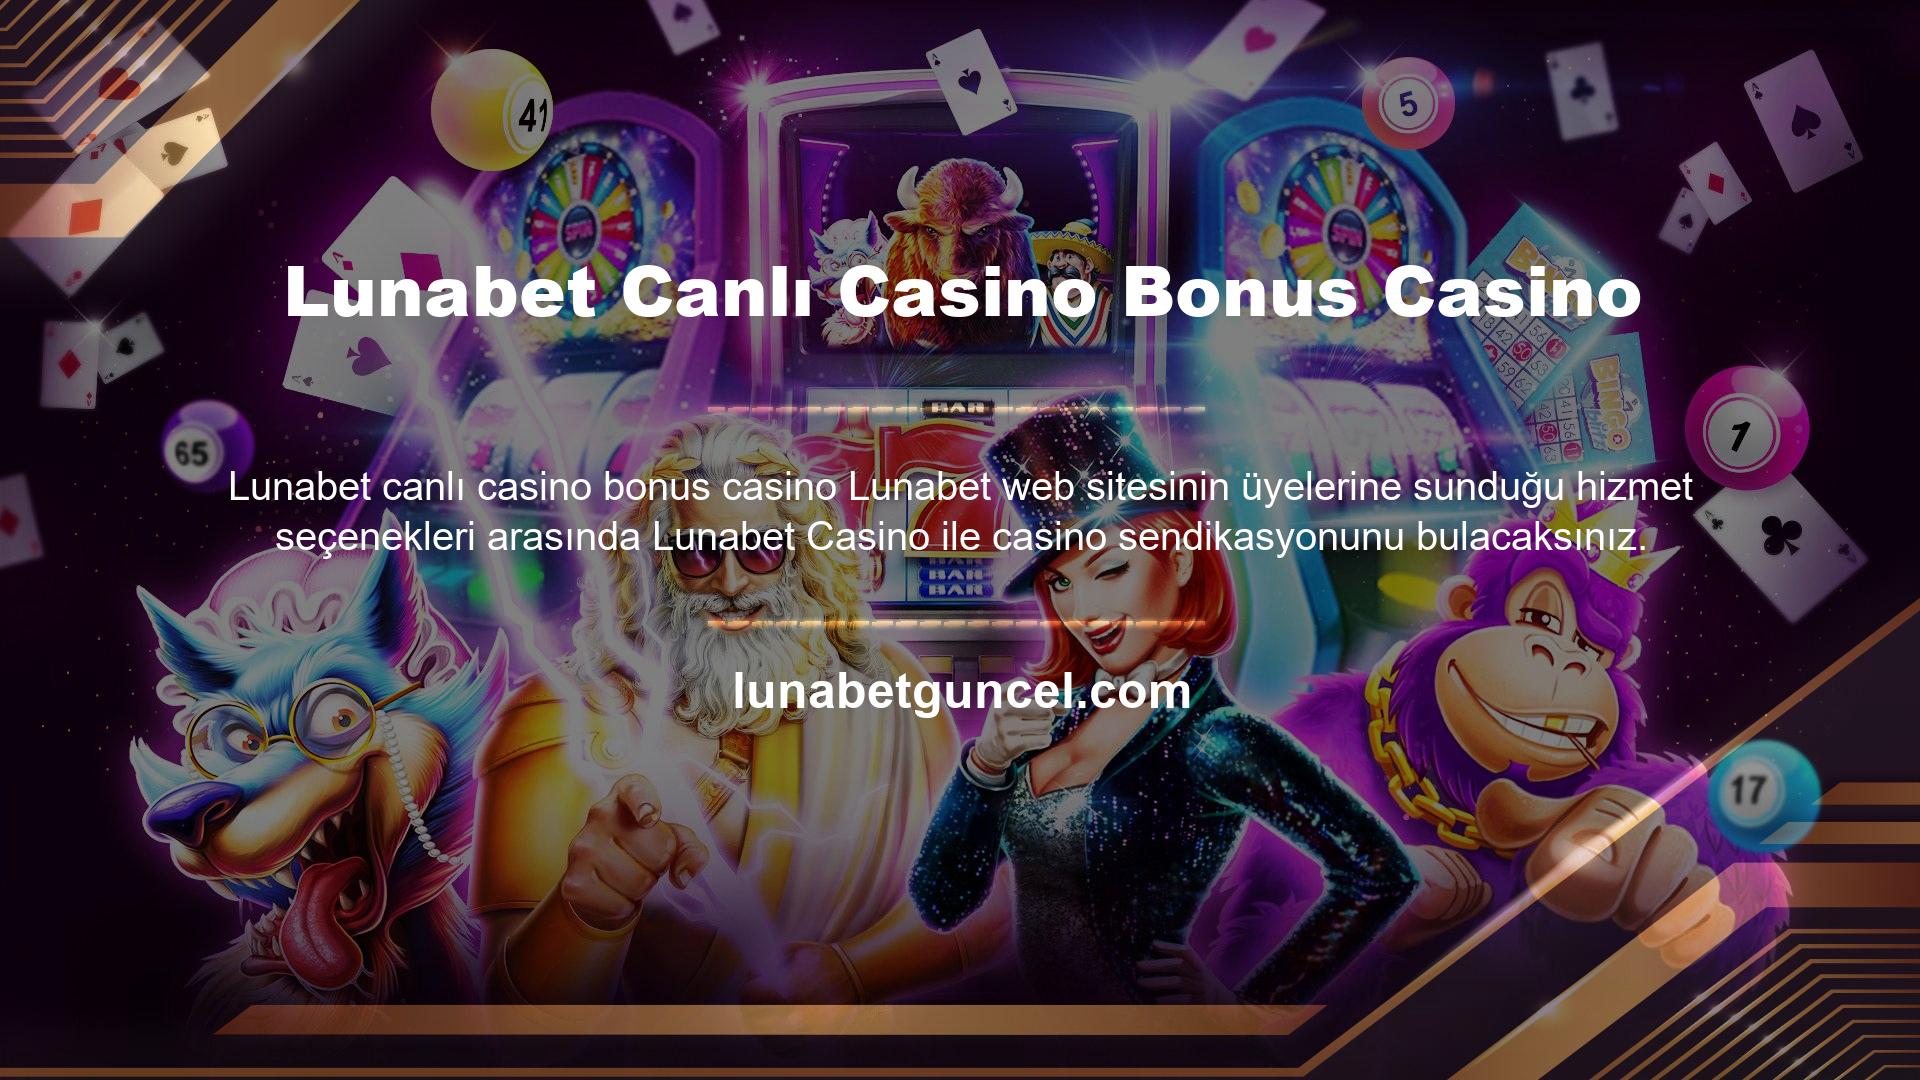 Bu web sitesinin ilginç özelliklerinden biri de casino oyunlarıyla ilgili olmasıdır